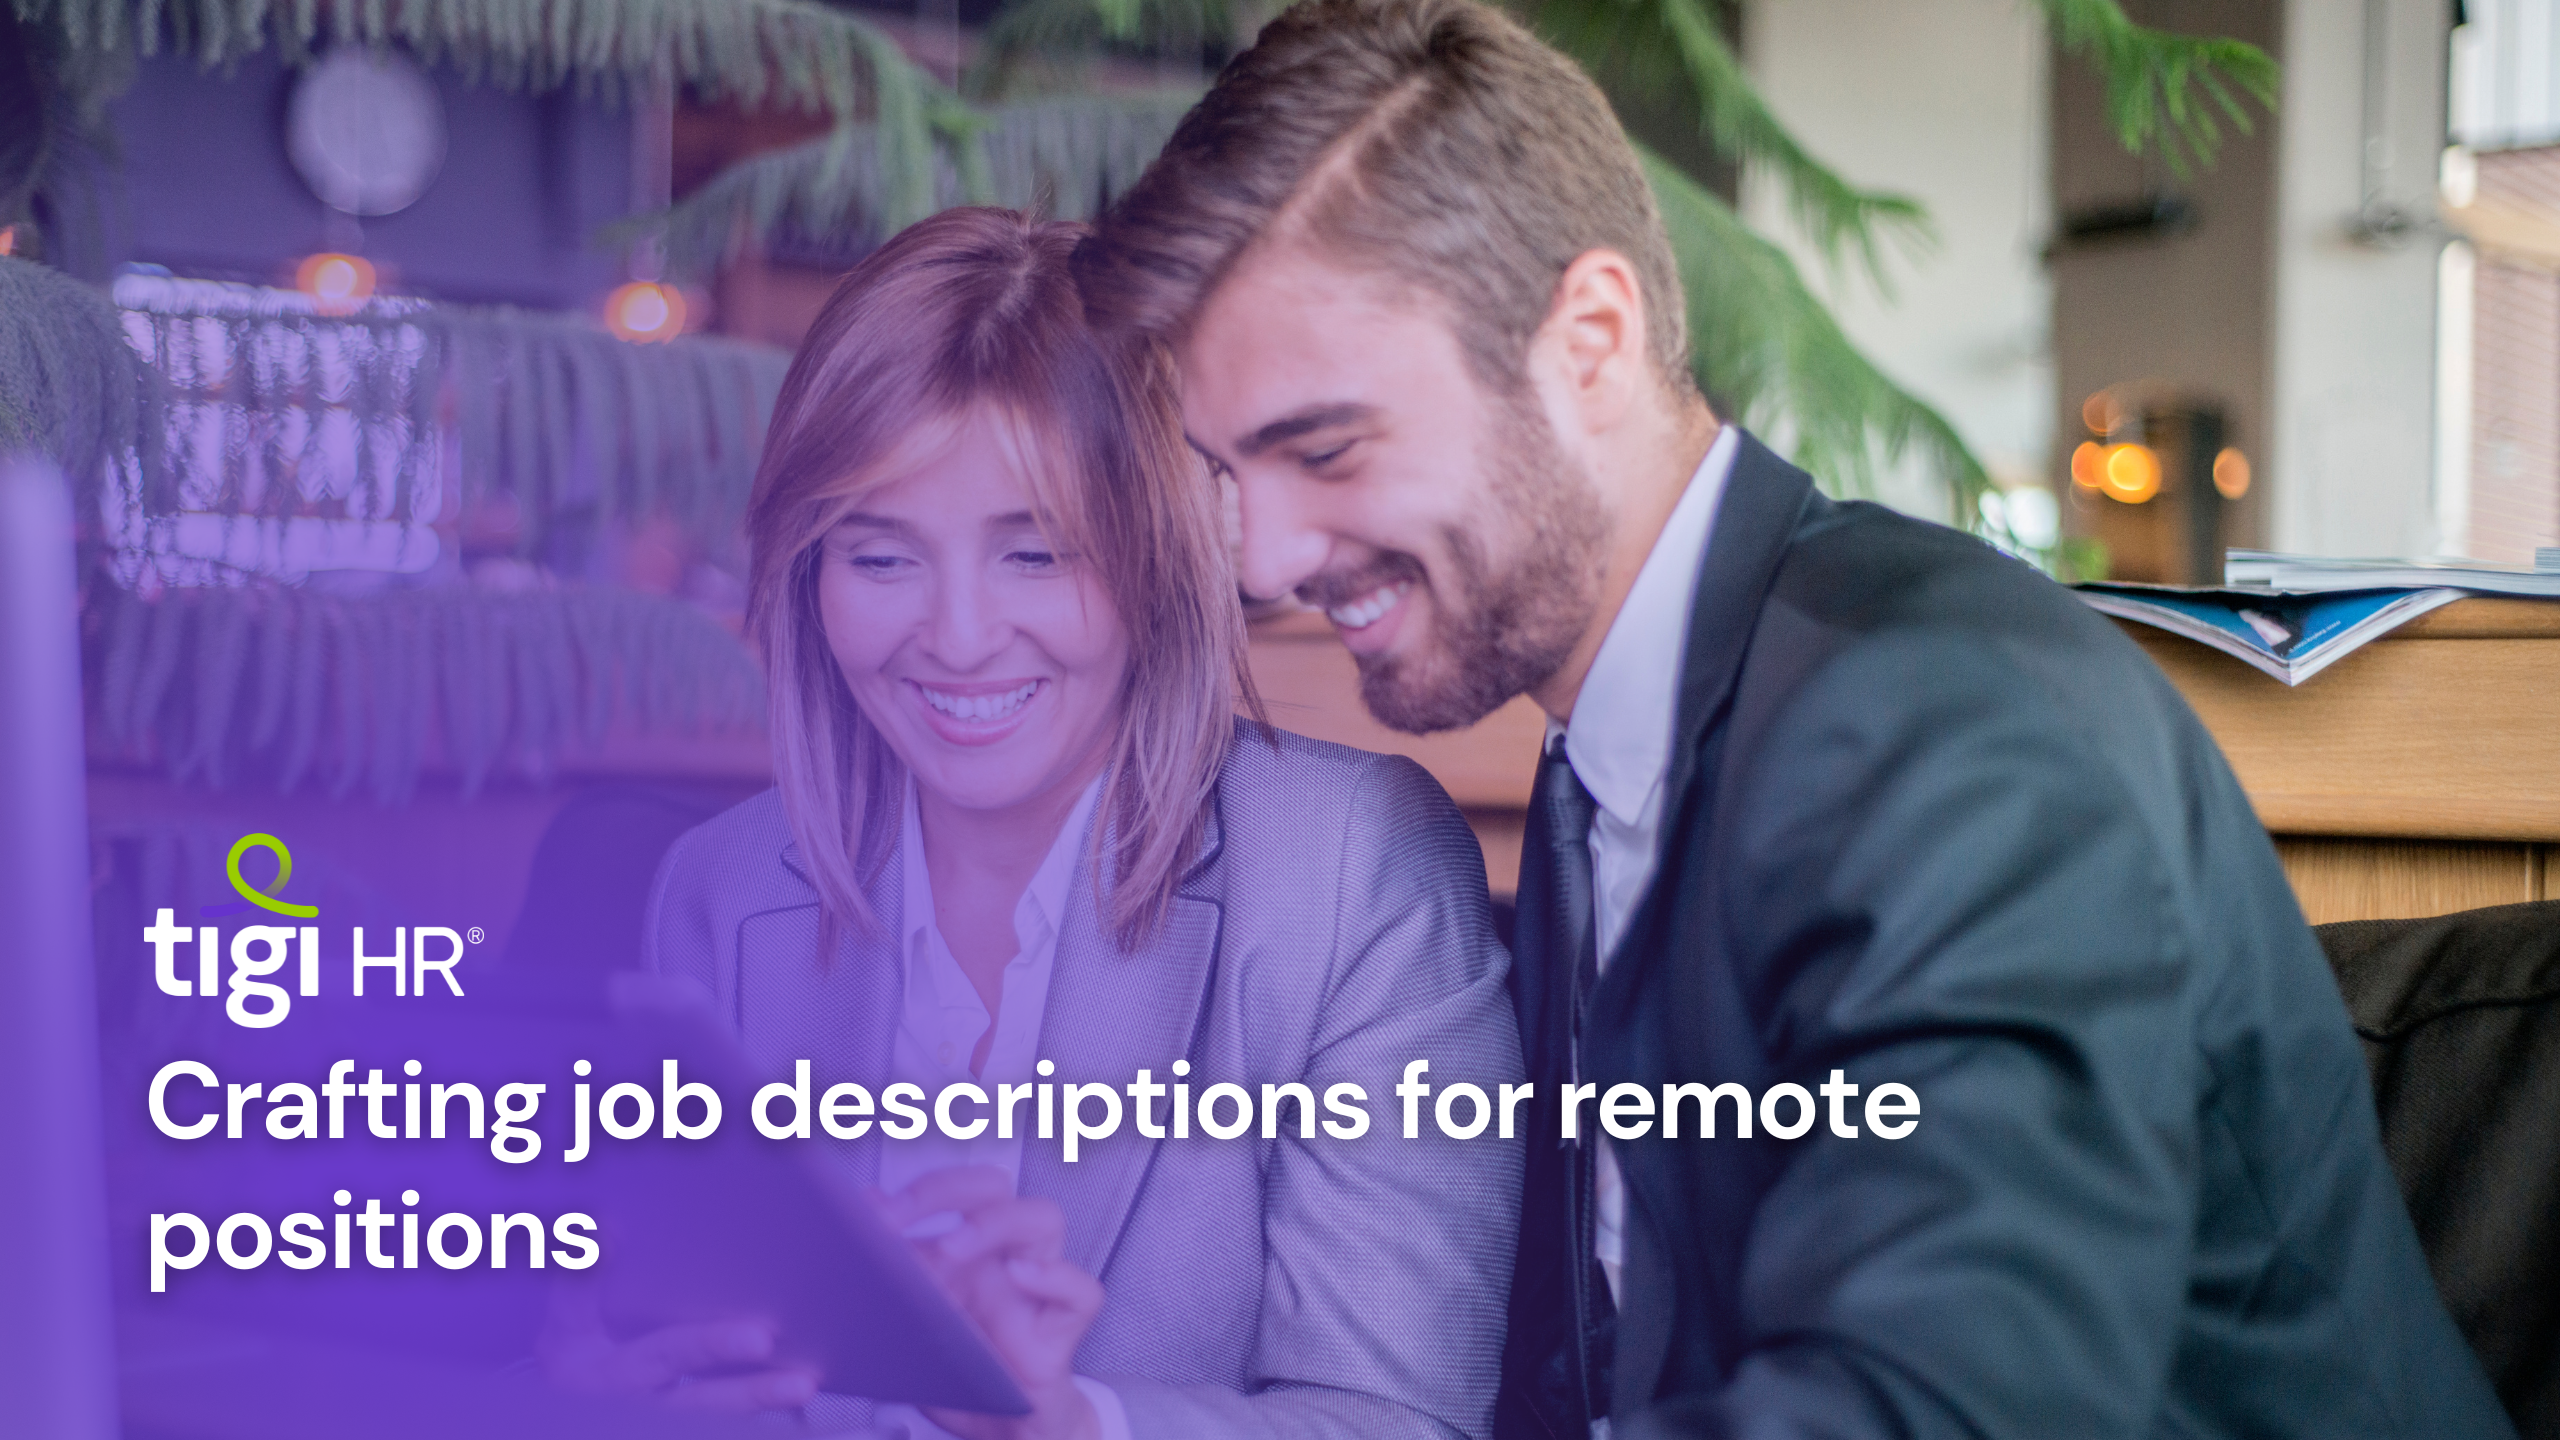 Crafting job descriptions for remote positions. Find jobs at TIGI HR.